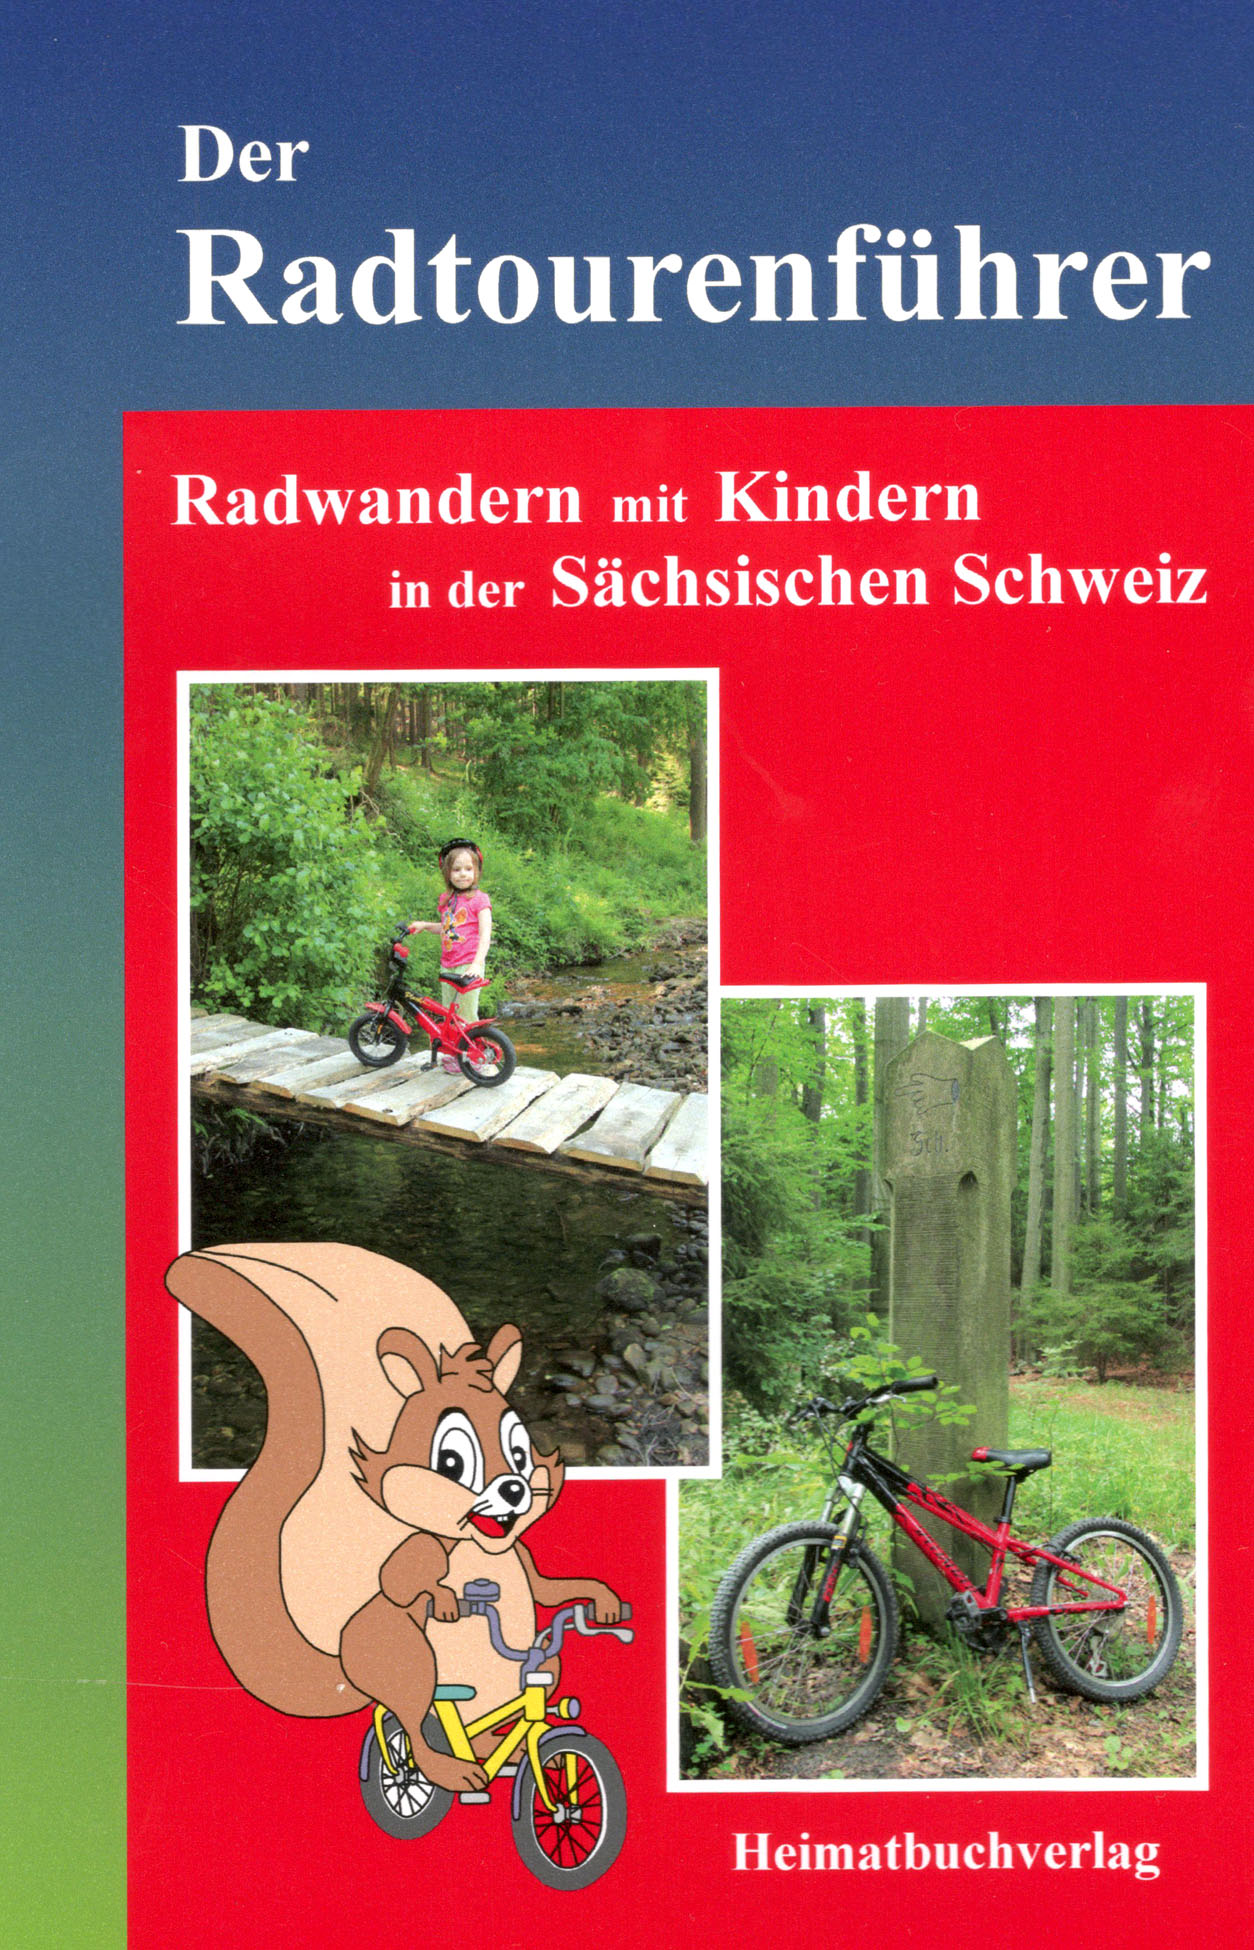 Radtourenführer Radwandern mit Kindern Sächsischen Schweiz Elbsandsteingebirge 